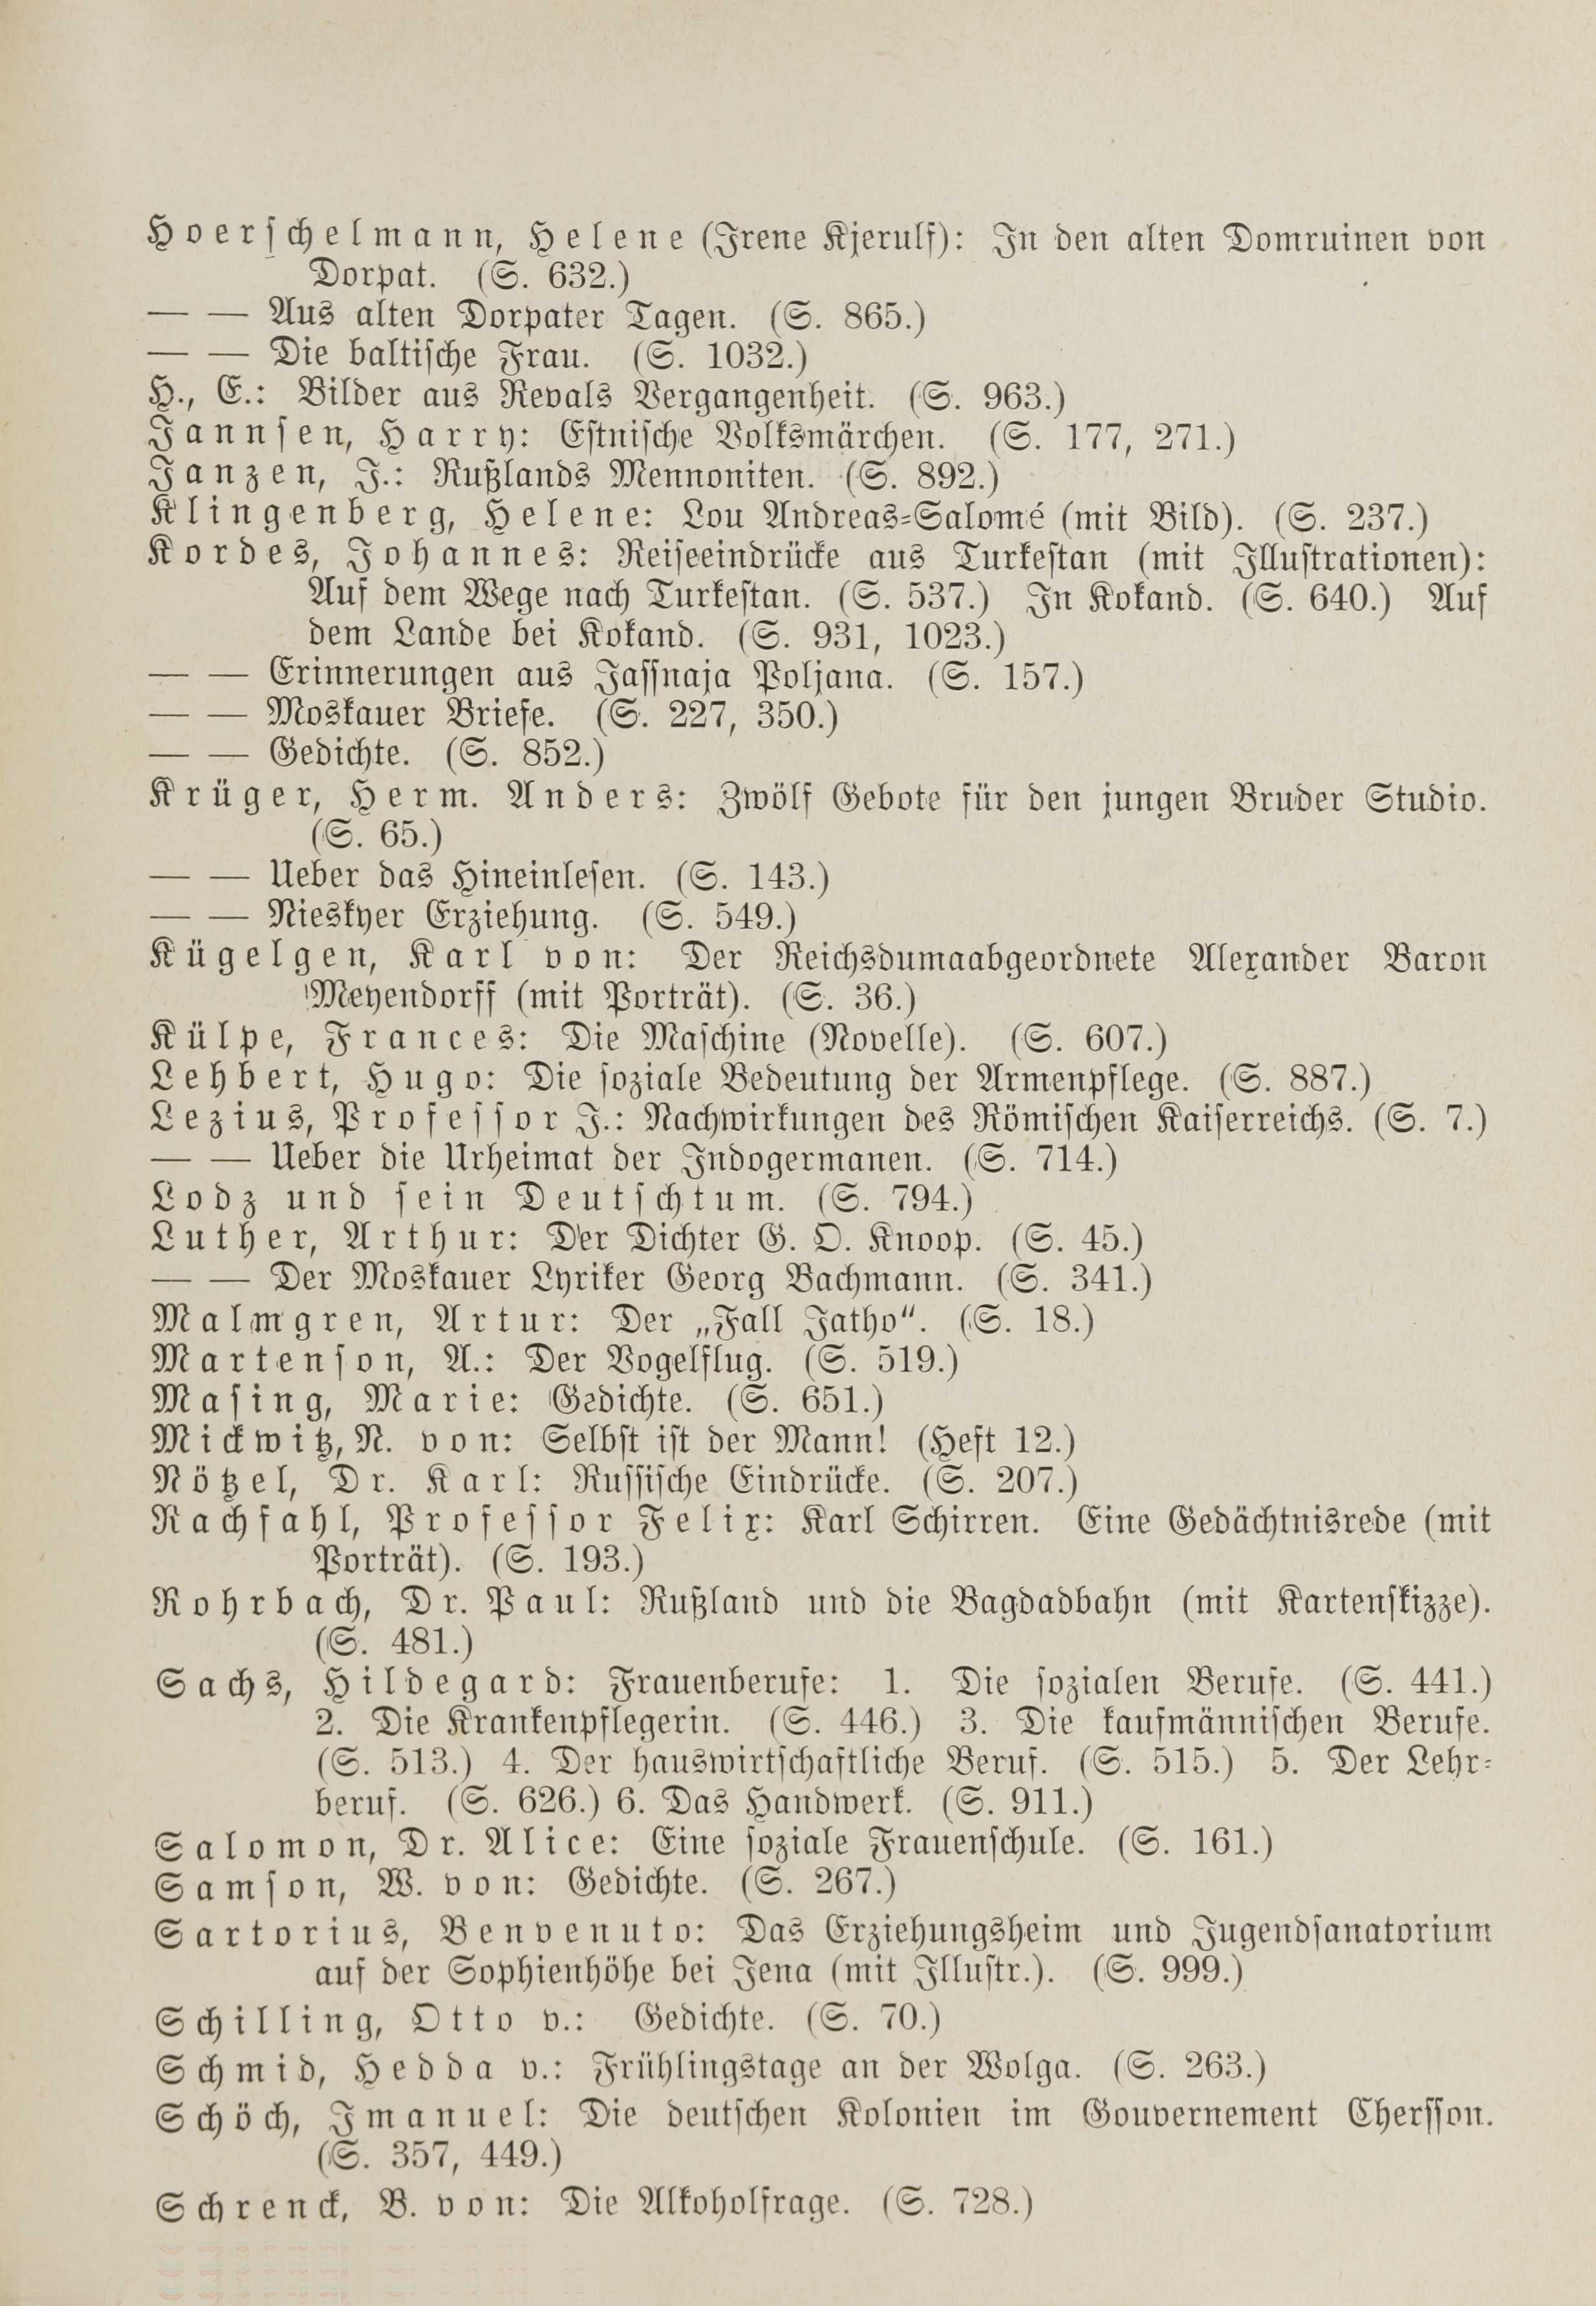 Deutsche Monatsschrift für Russland [1] (1912) | 6. Table of contents